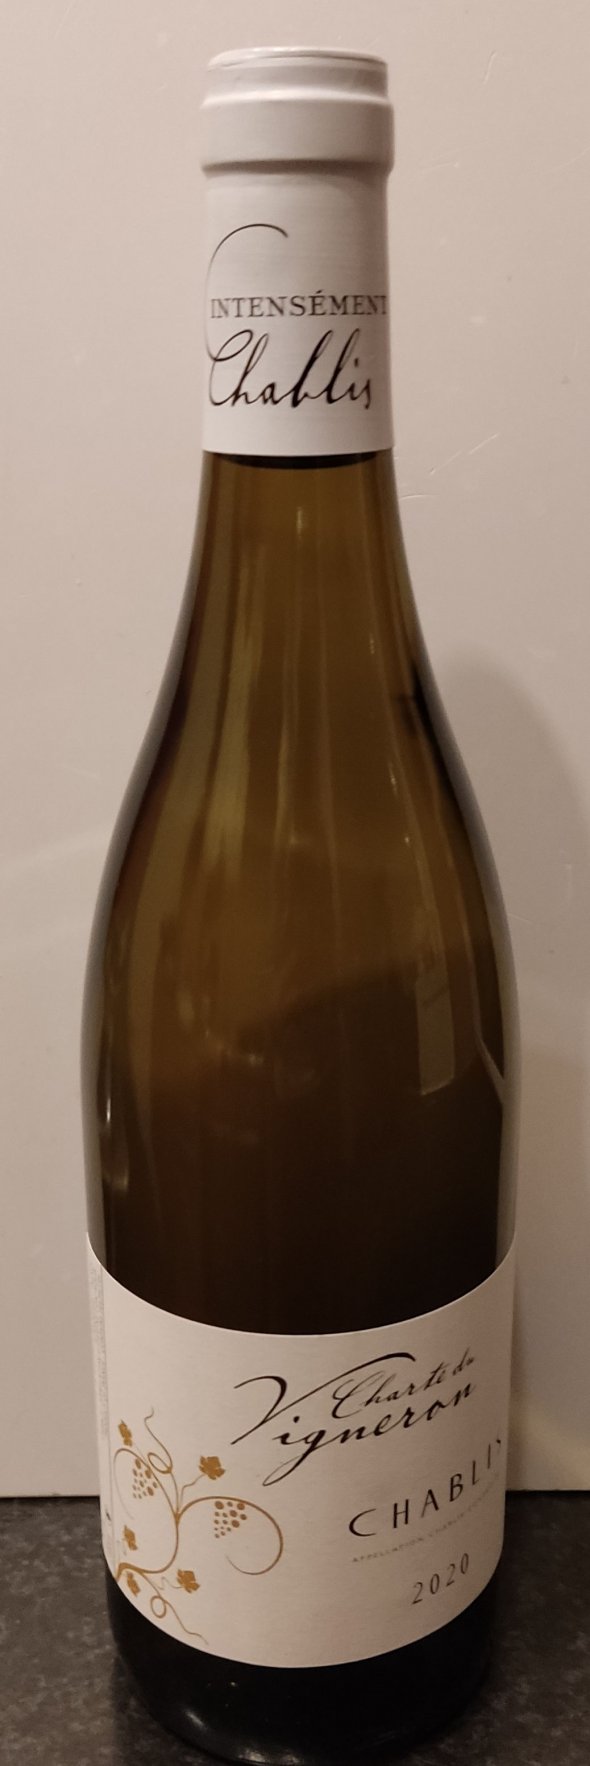 Chablis, Chardonnay, Vigneron